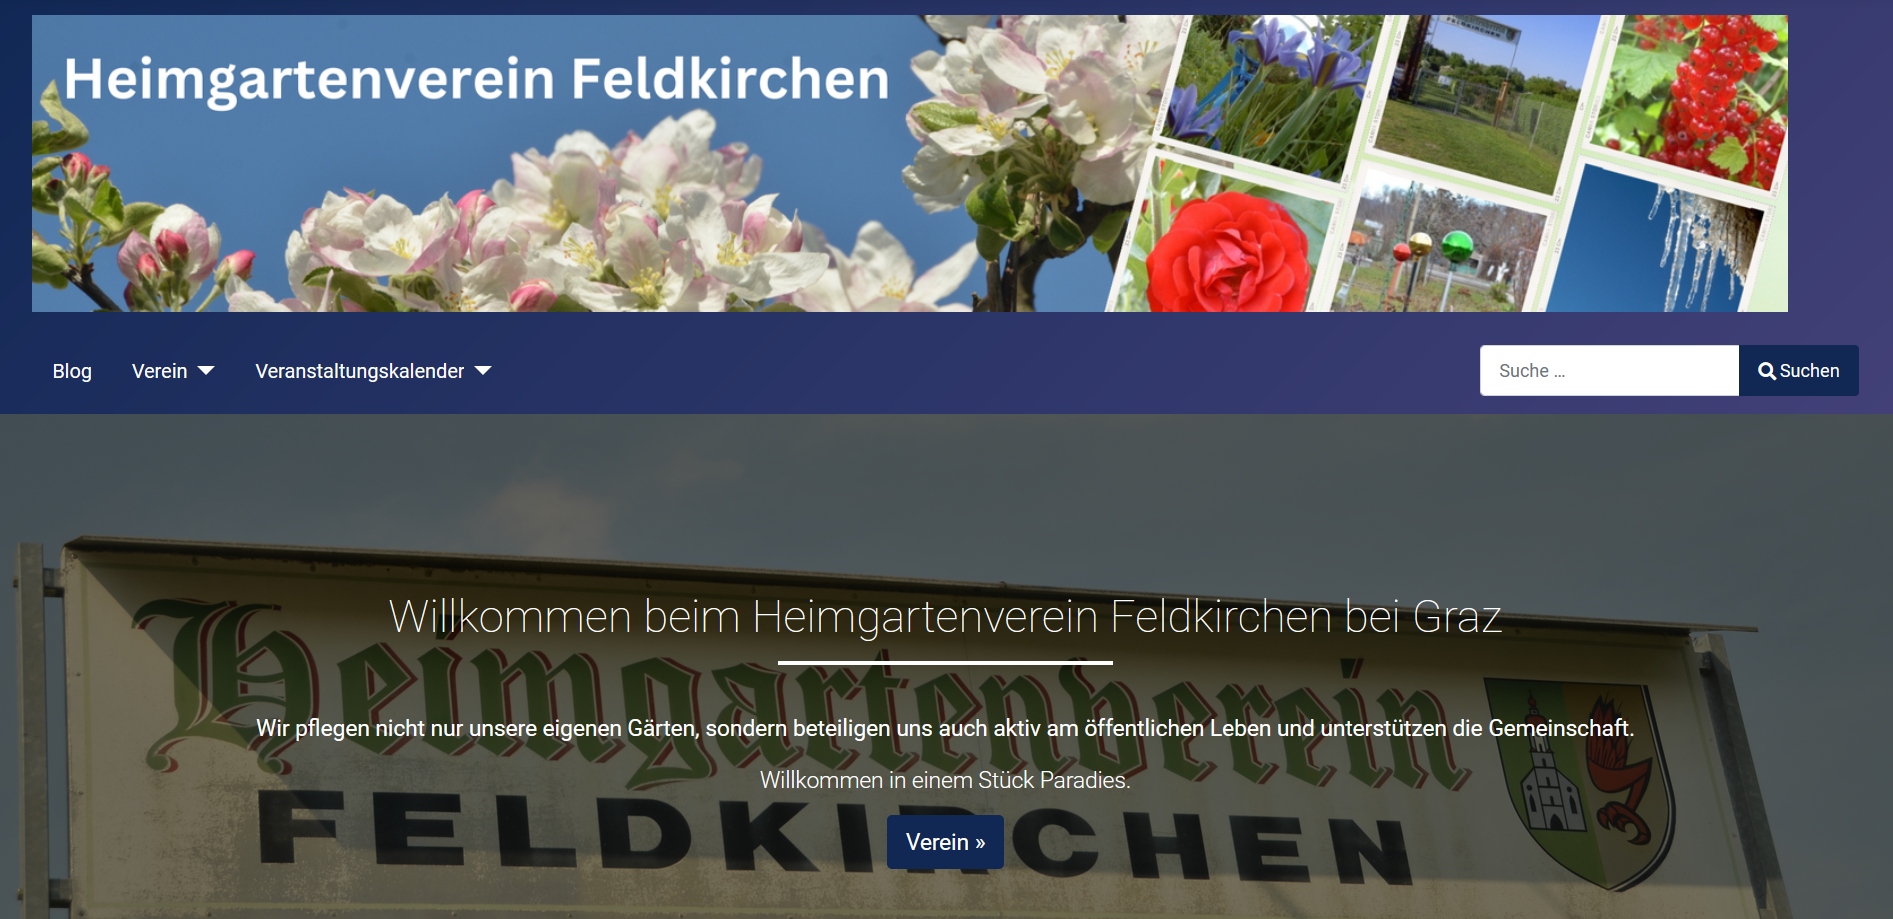 Website des Heimgartenvereins